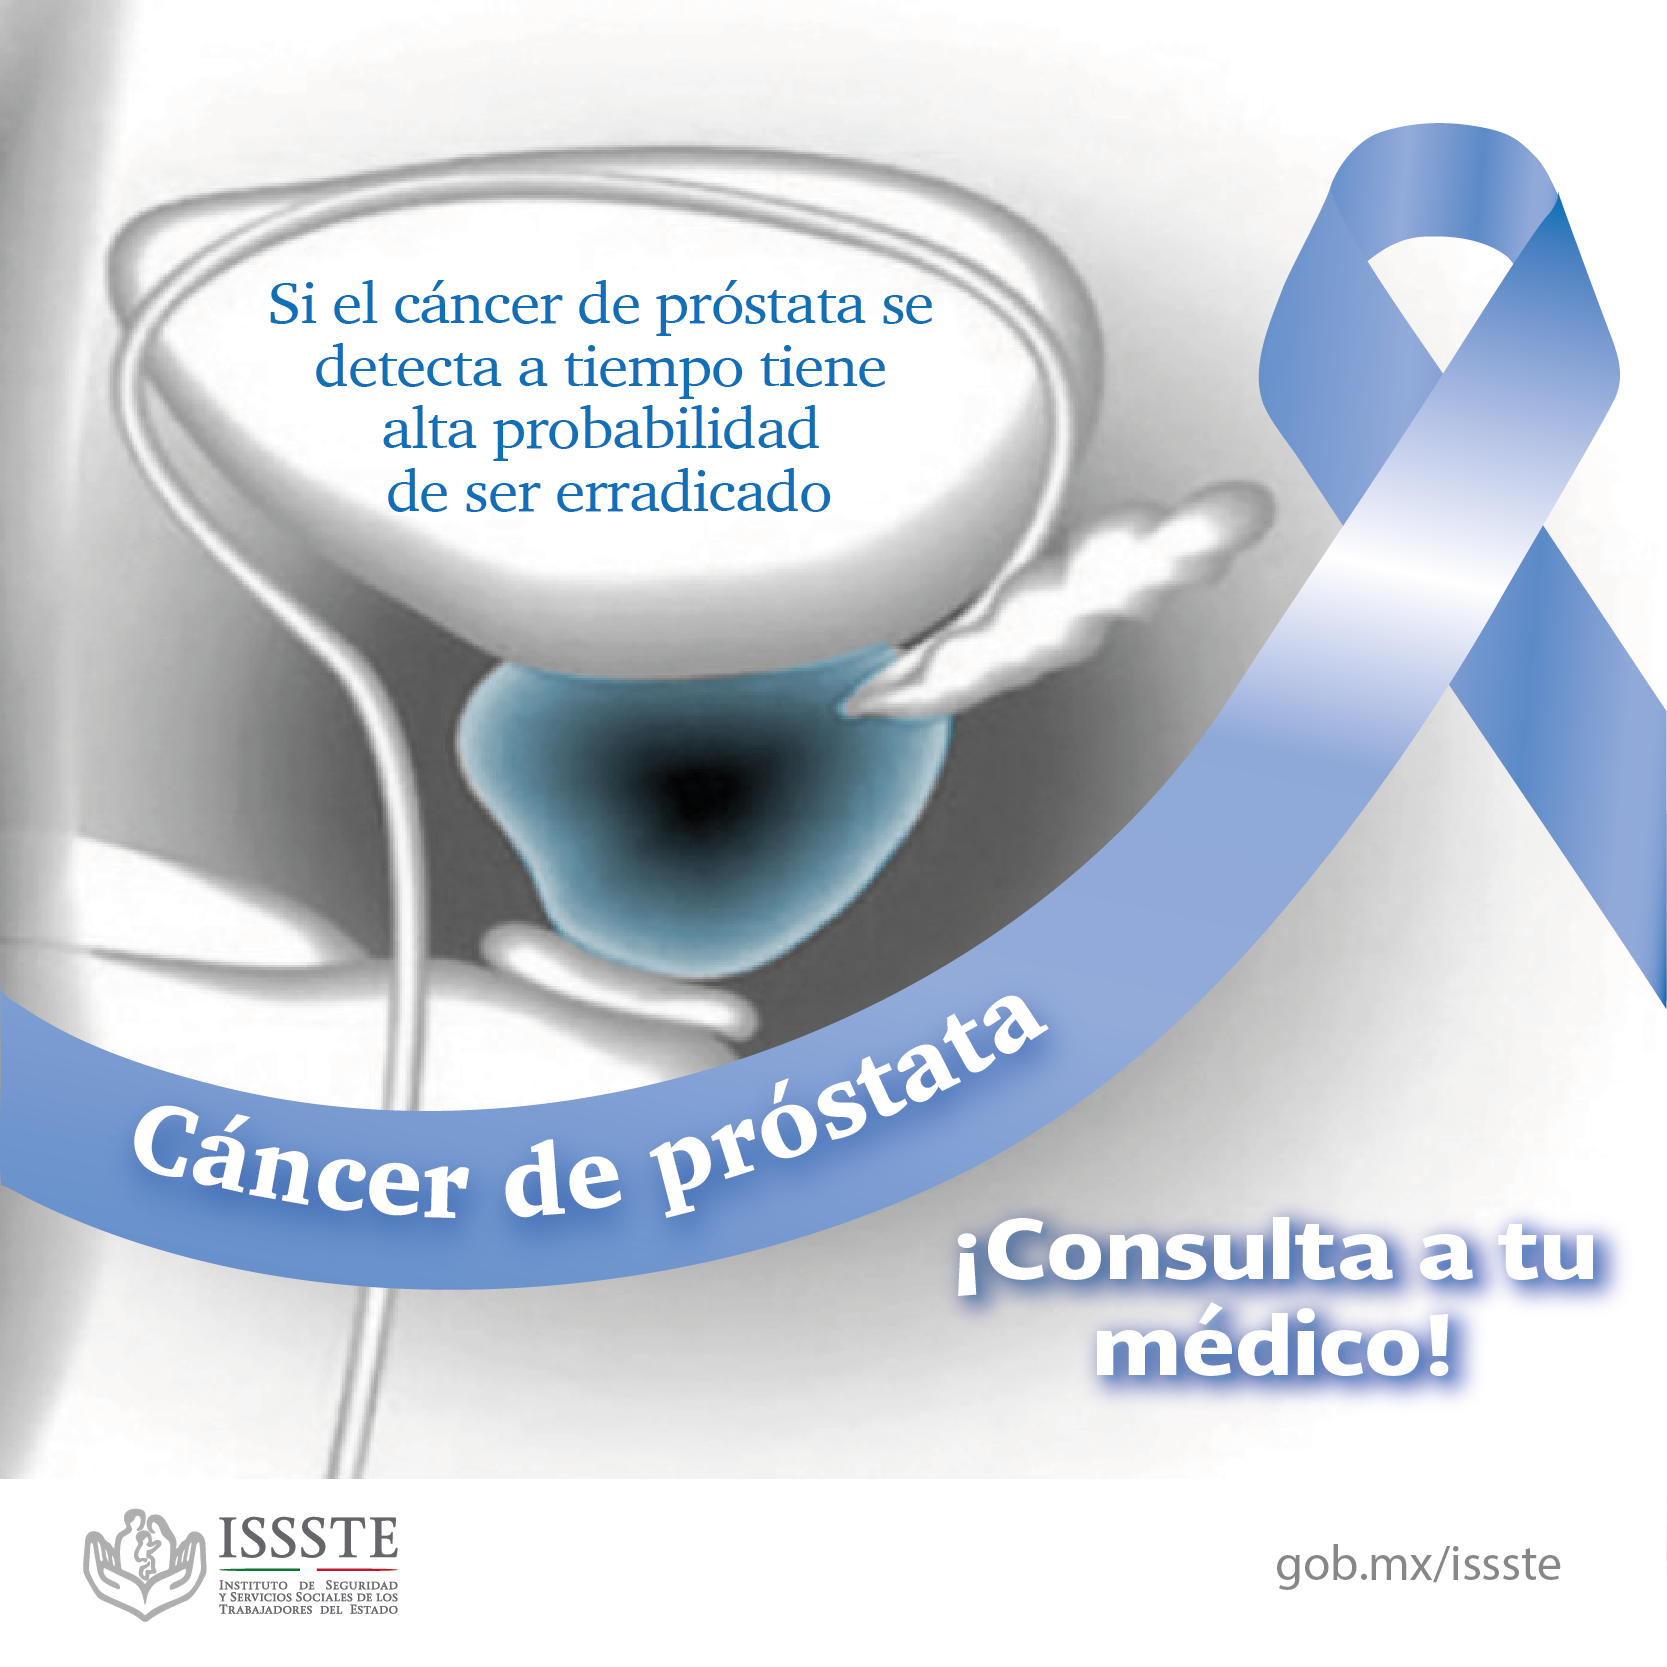 /cms/uploads/image/file/158022/cancer-prostata-05.png